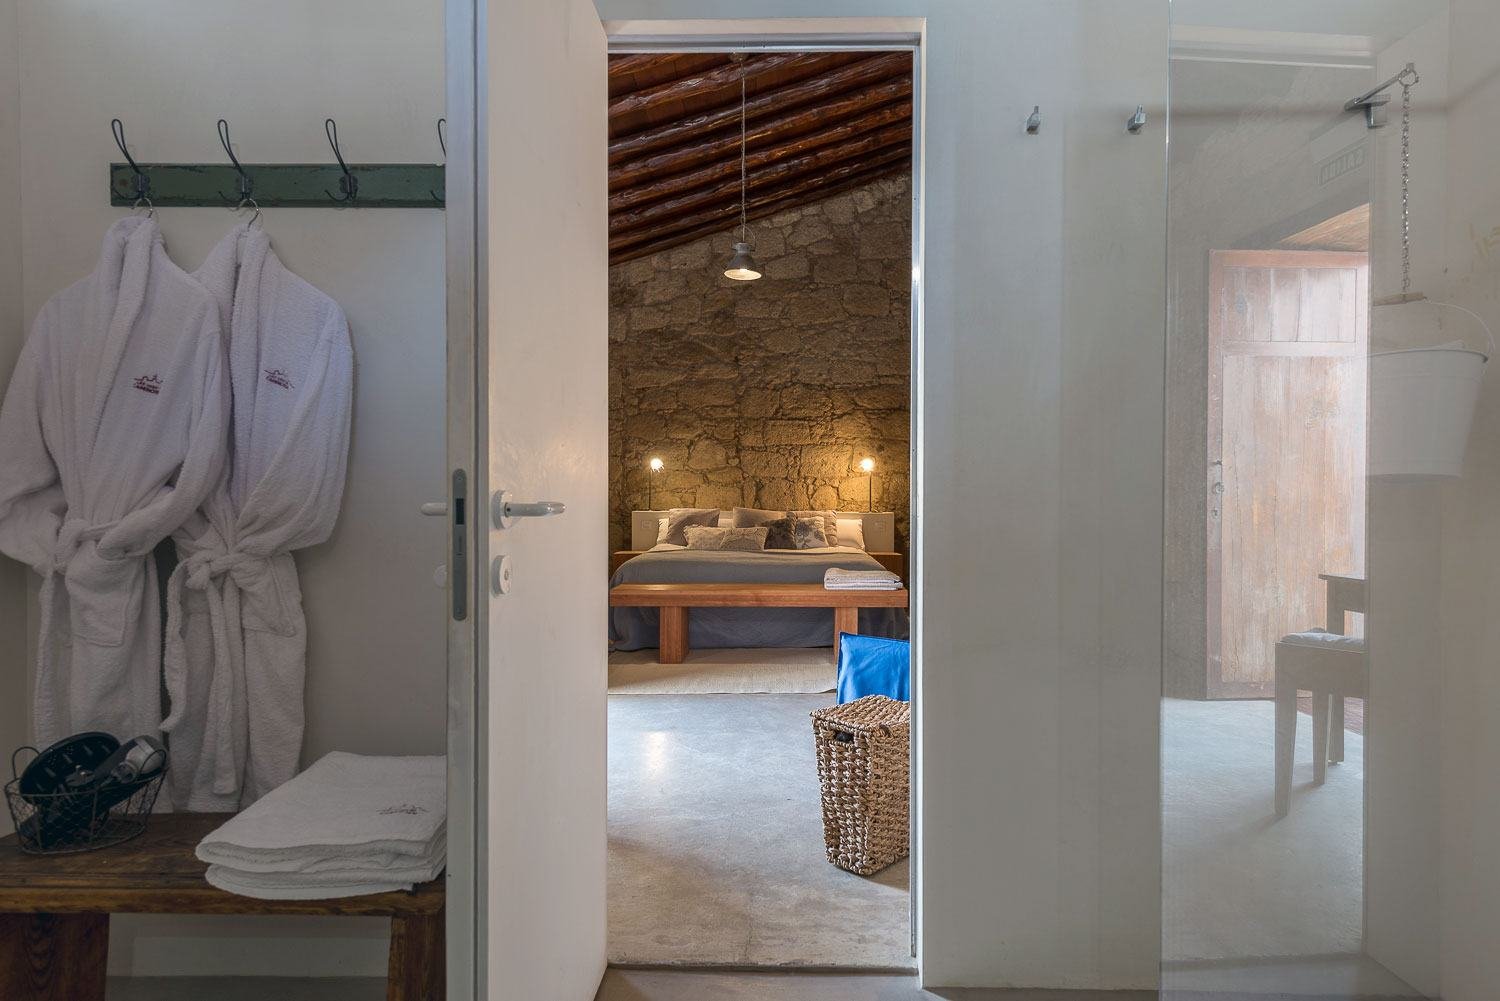 Una vista desde el baño hacia el dormitorio, se muestran las tradicionales paredes de piedra así como otros elementos tradicionales canarios - La Casa del Alpendre.